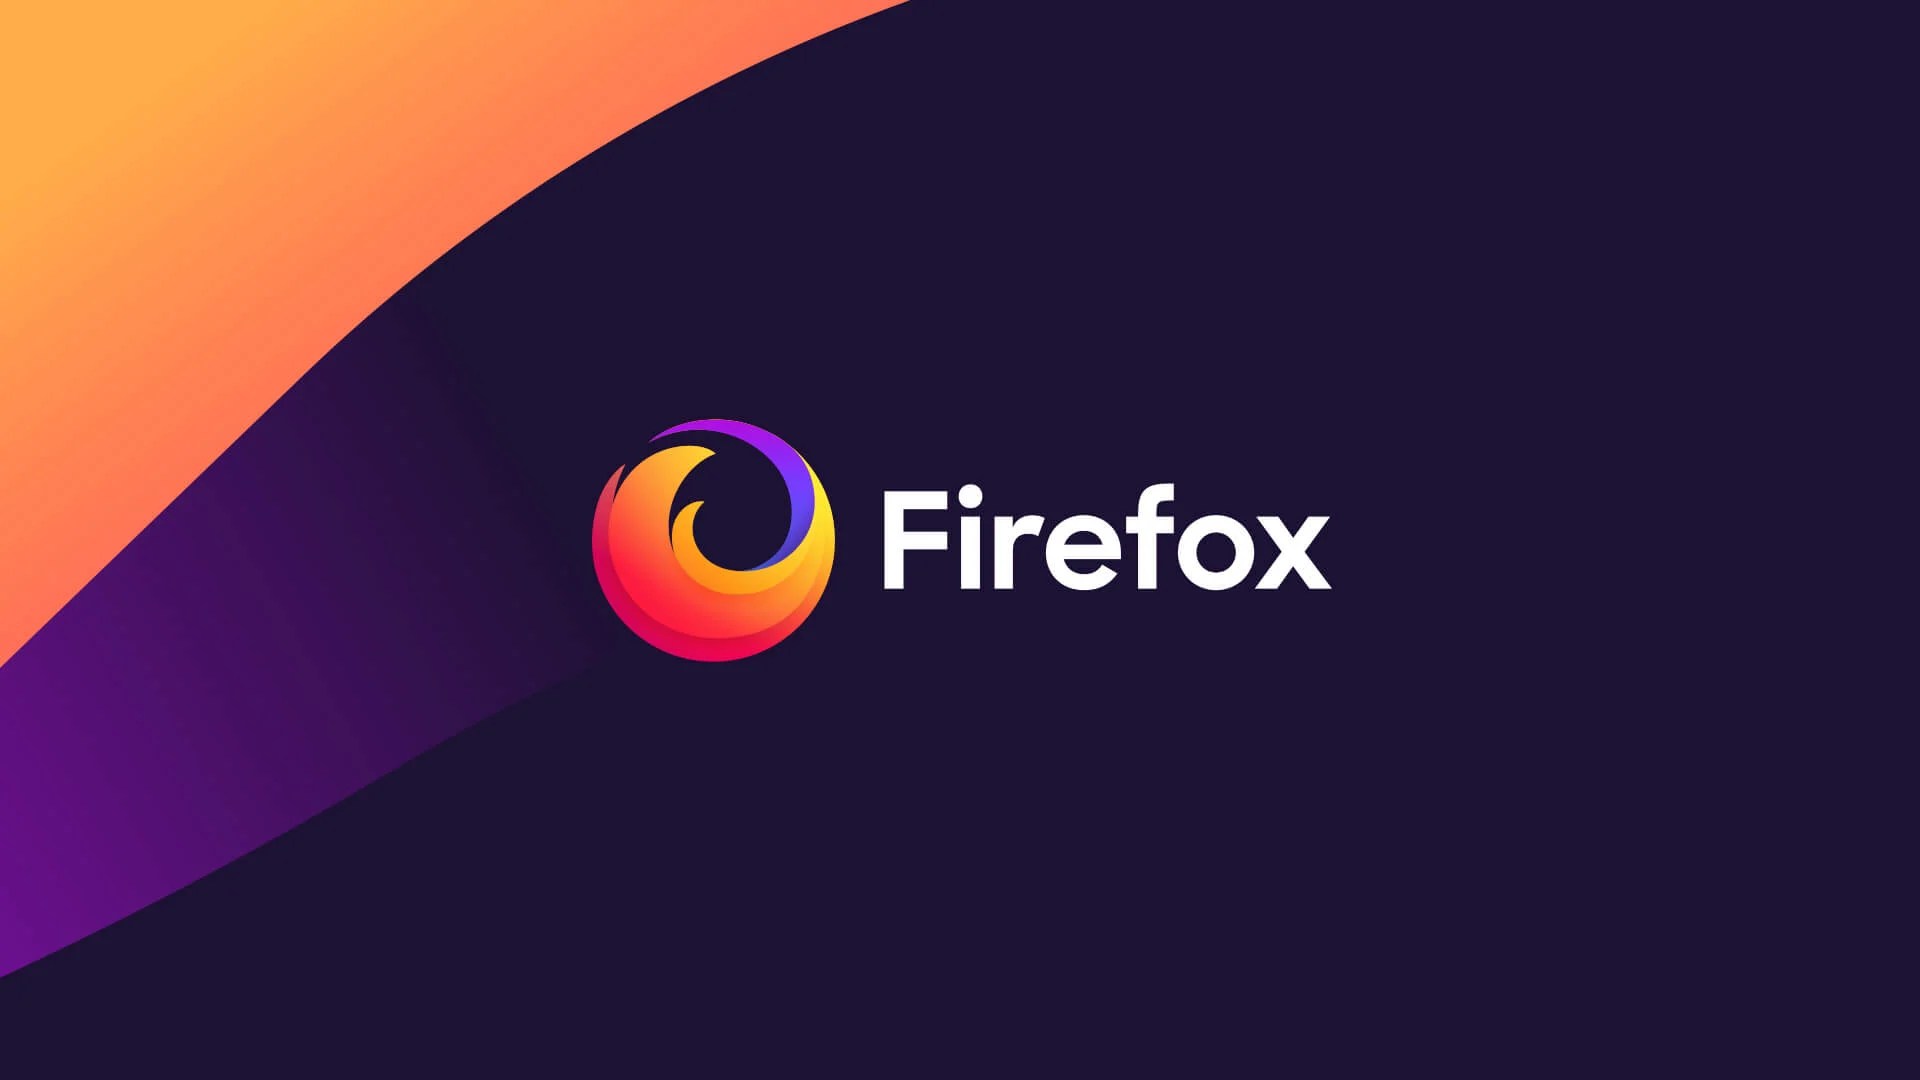 Dernière mise à jour pour Mozilla Firefox sur Android avant relooking